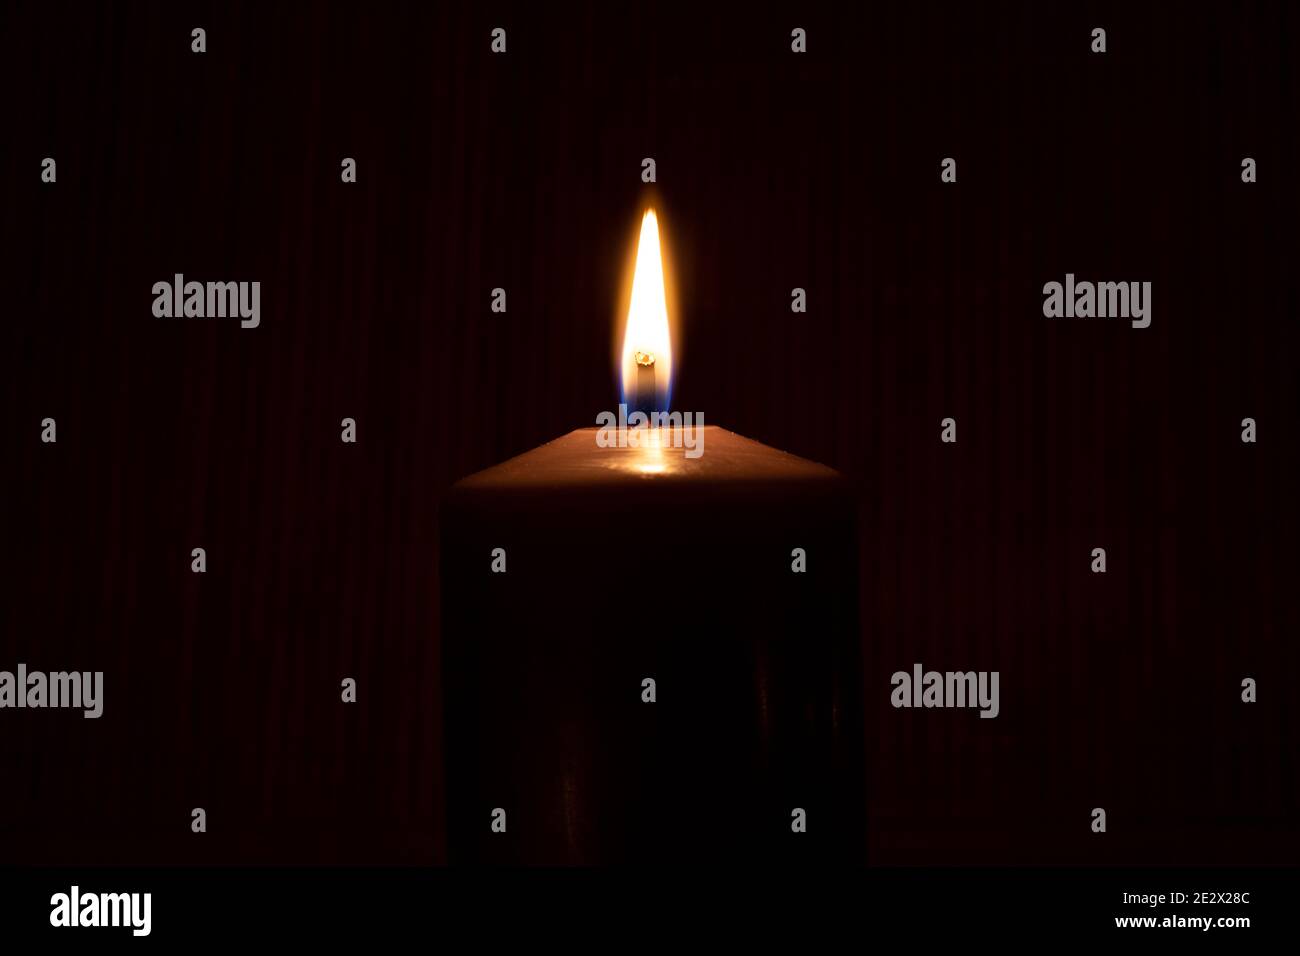 Close-Up Of Illuminated Candle Against Black Background Stock Photo